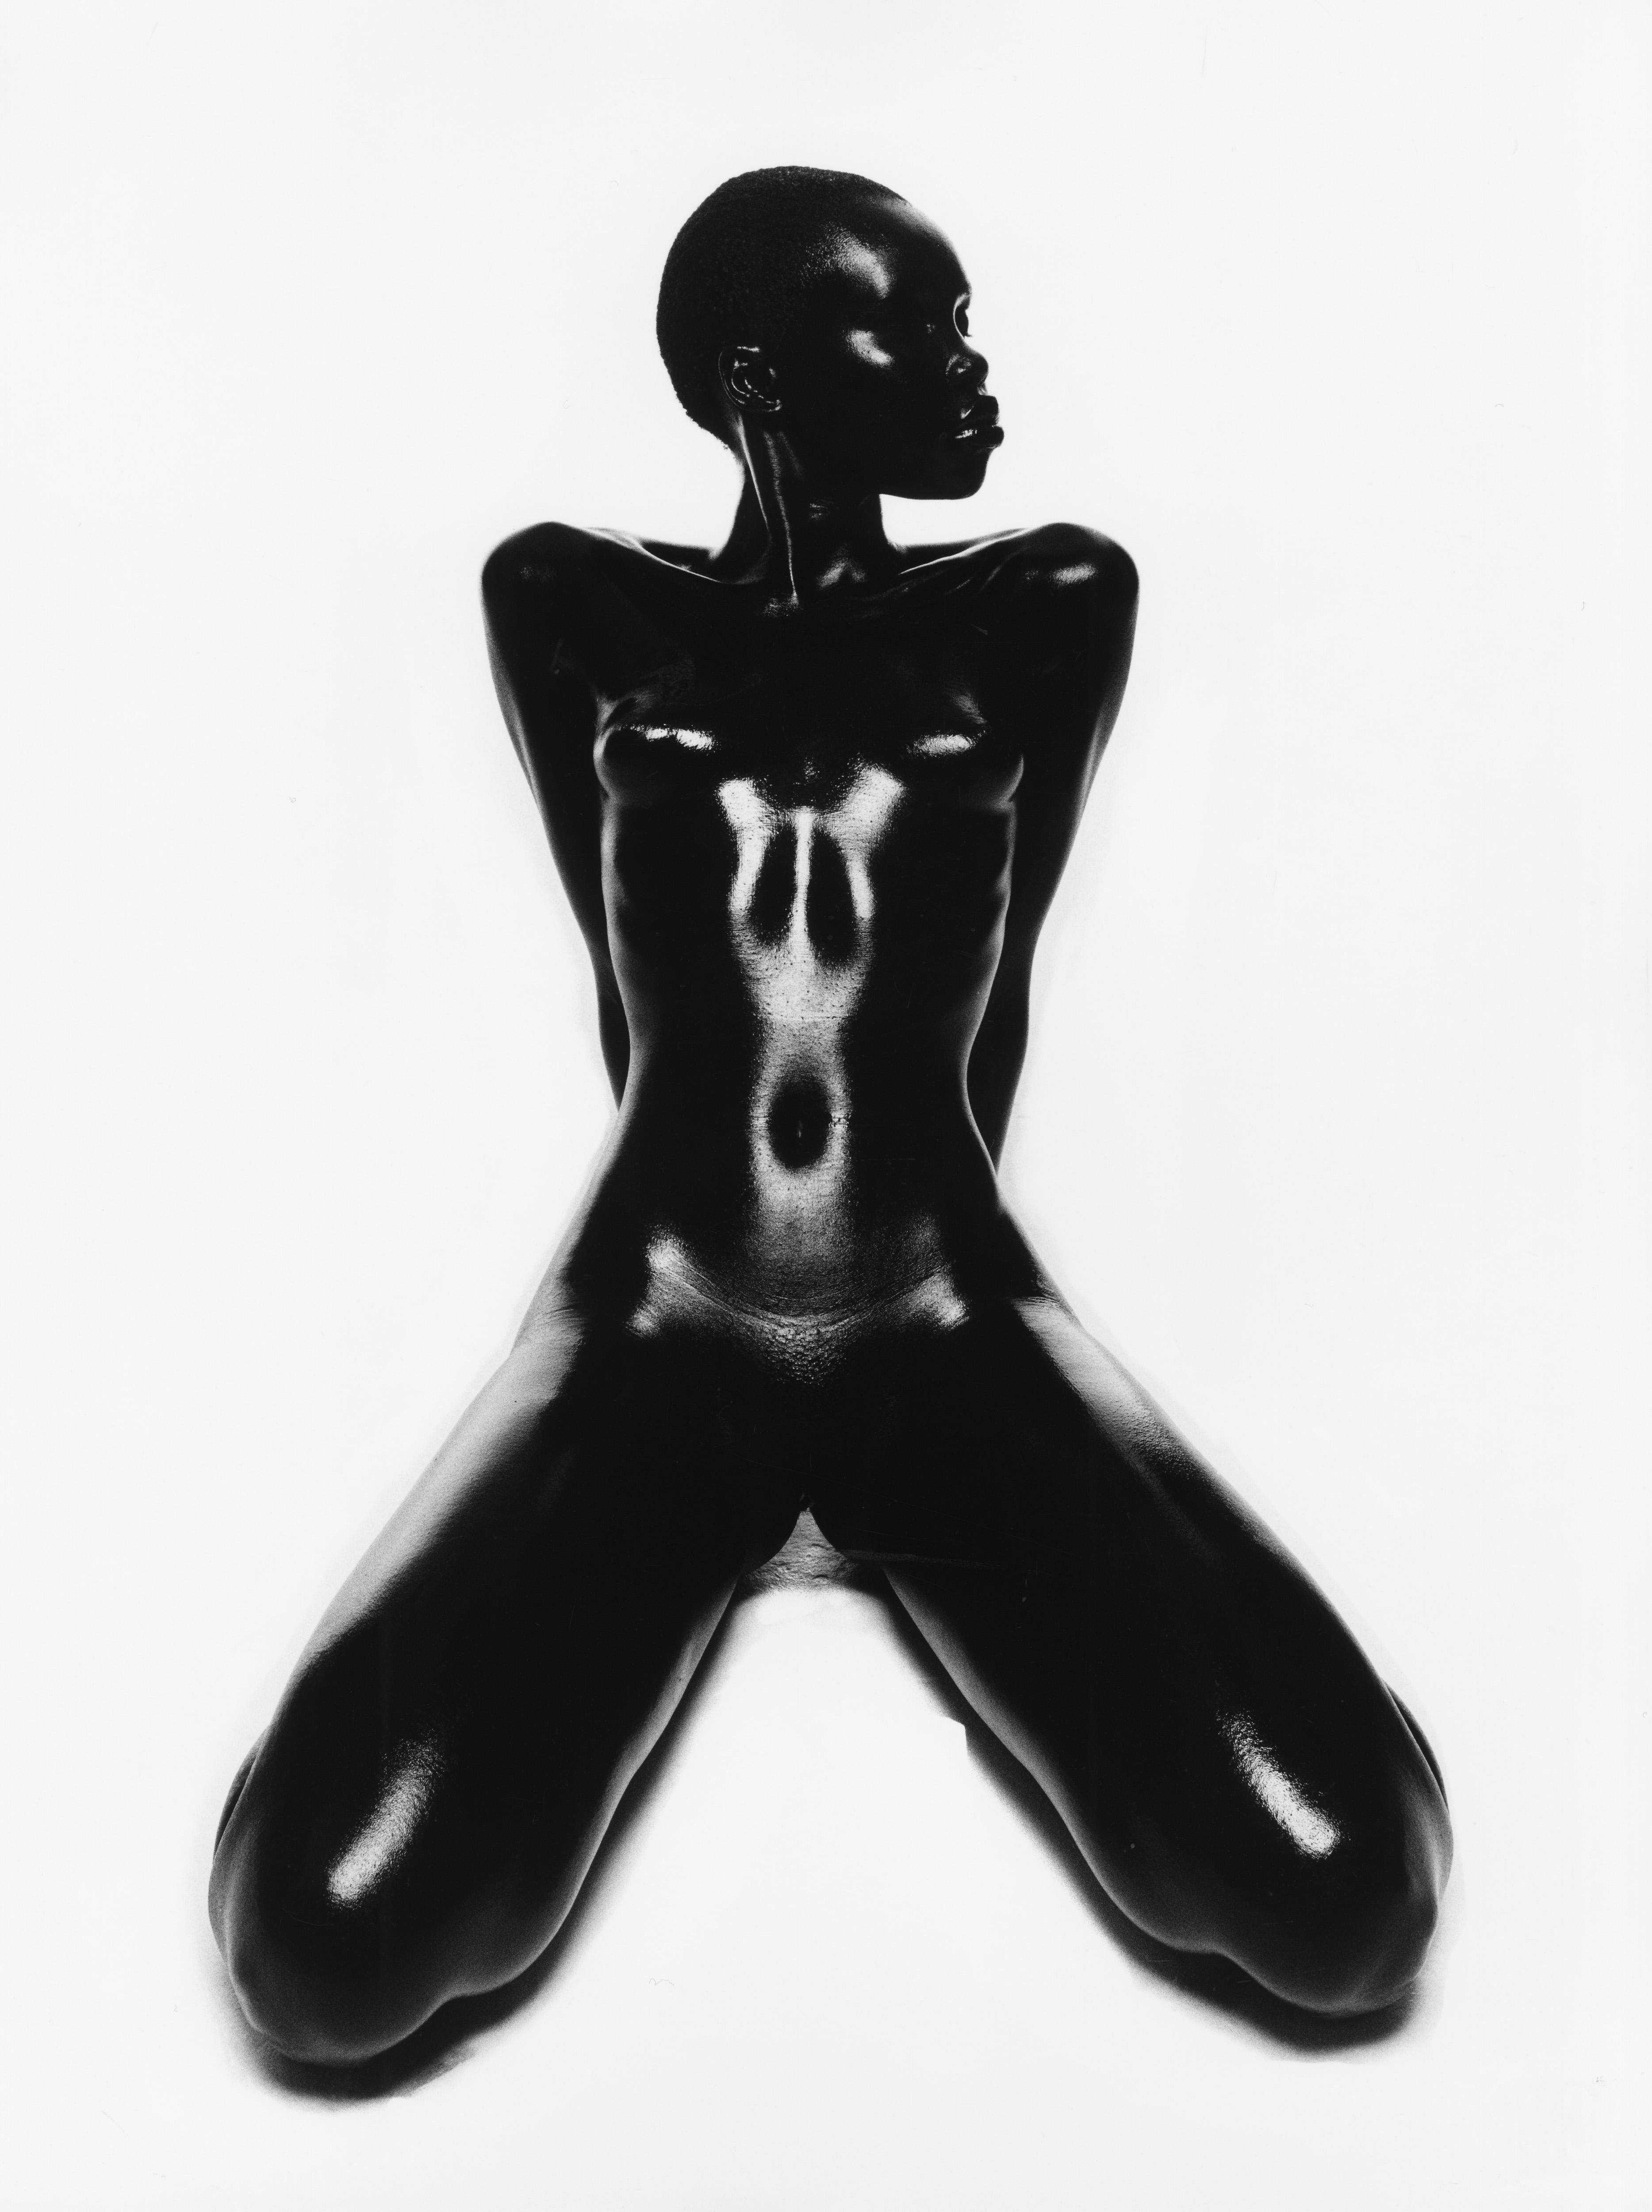 Thierry Le Gouès Black and White Photograph – Clara, Paris 1997